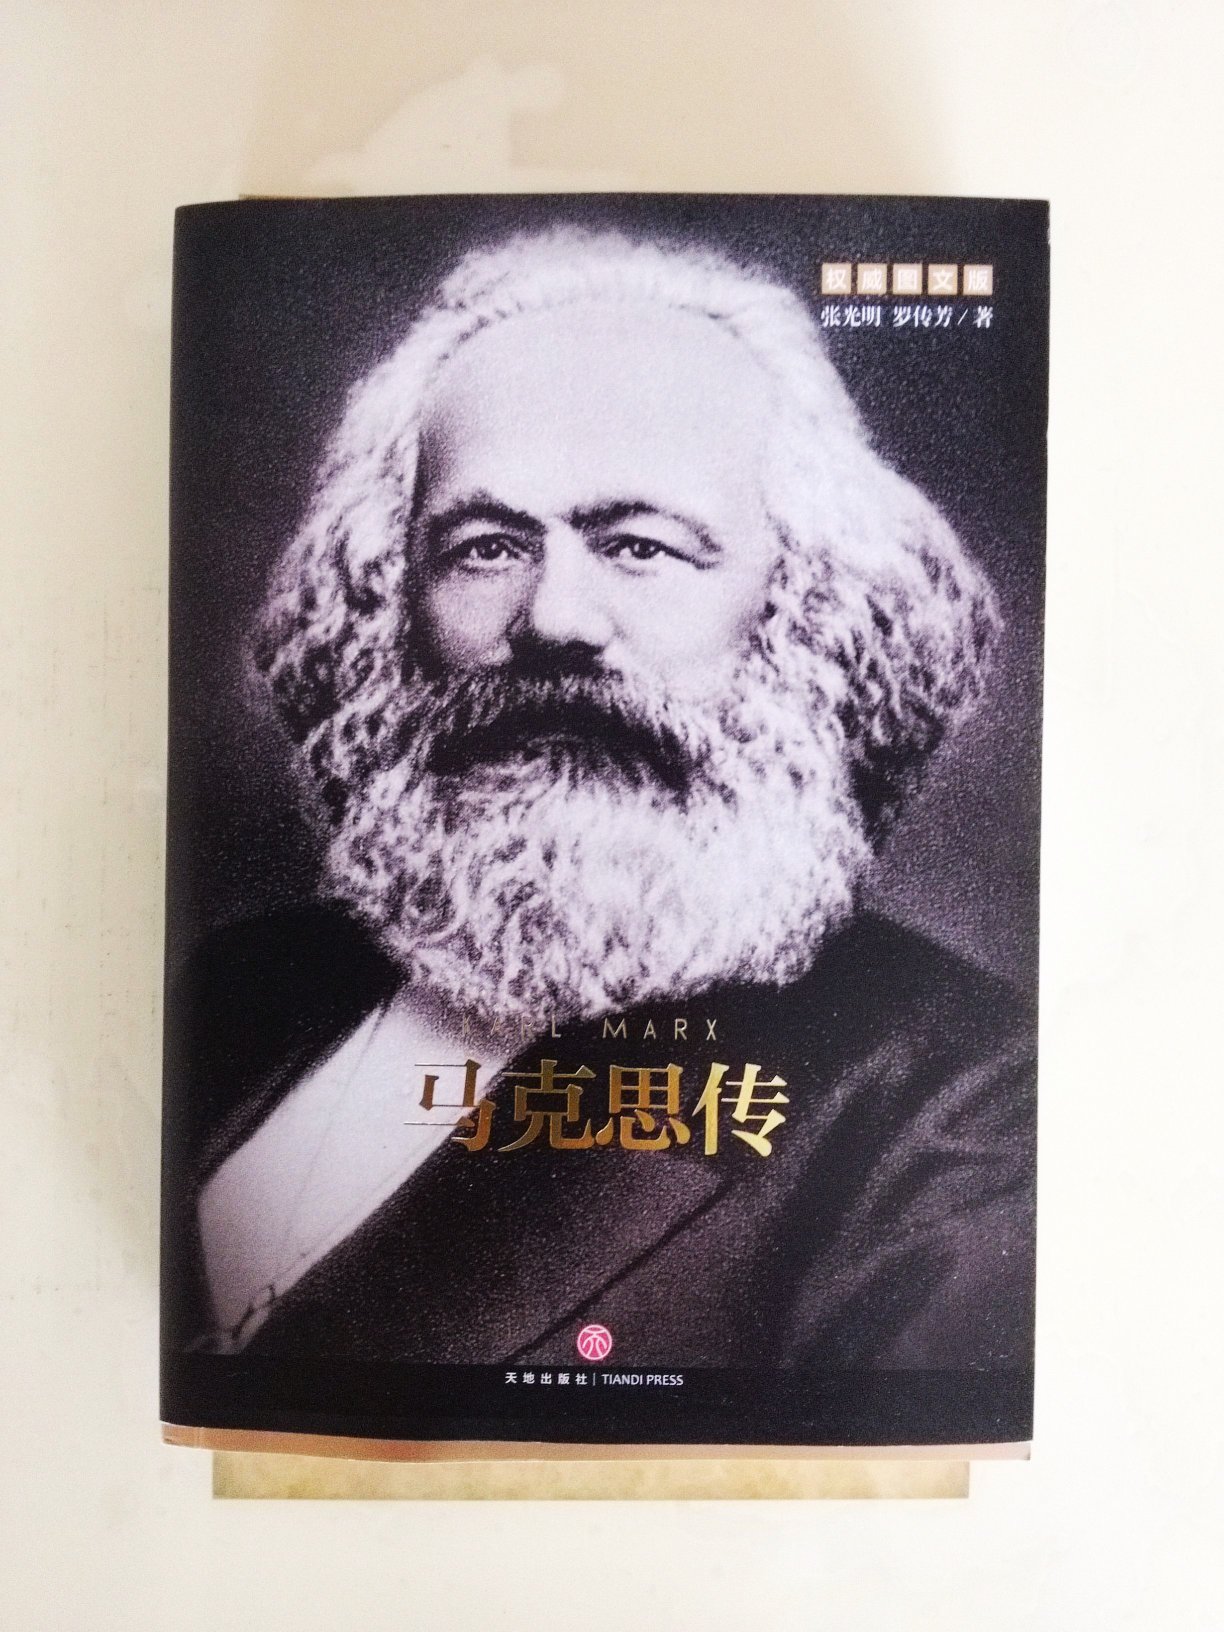 正版书籍、内容丰富、学习伟大列宁的生平事迹